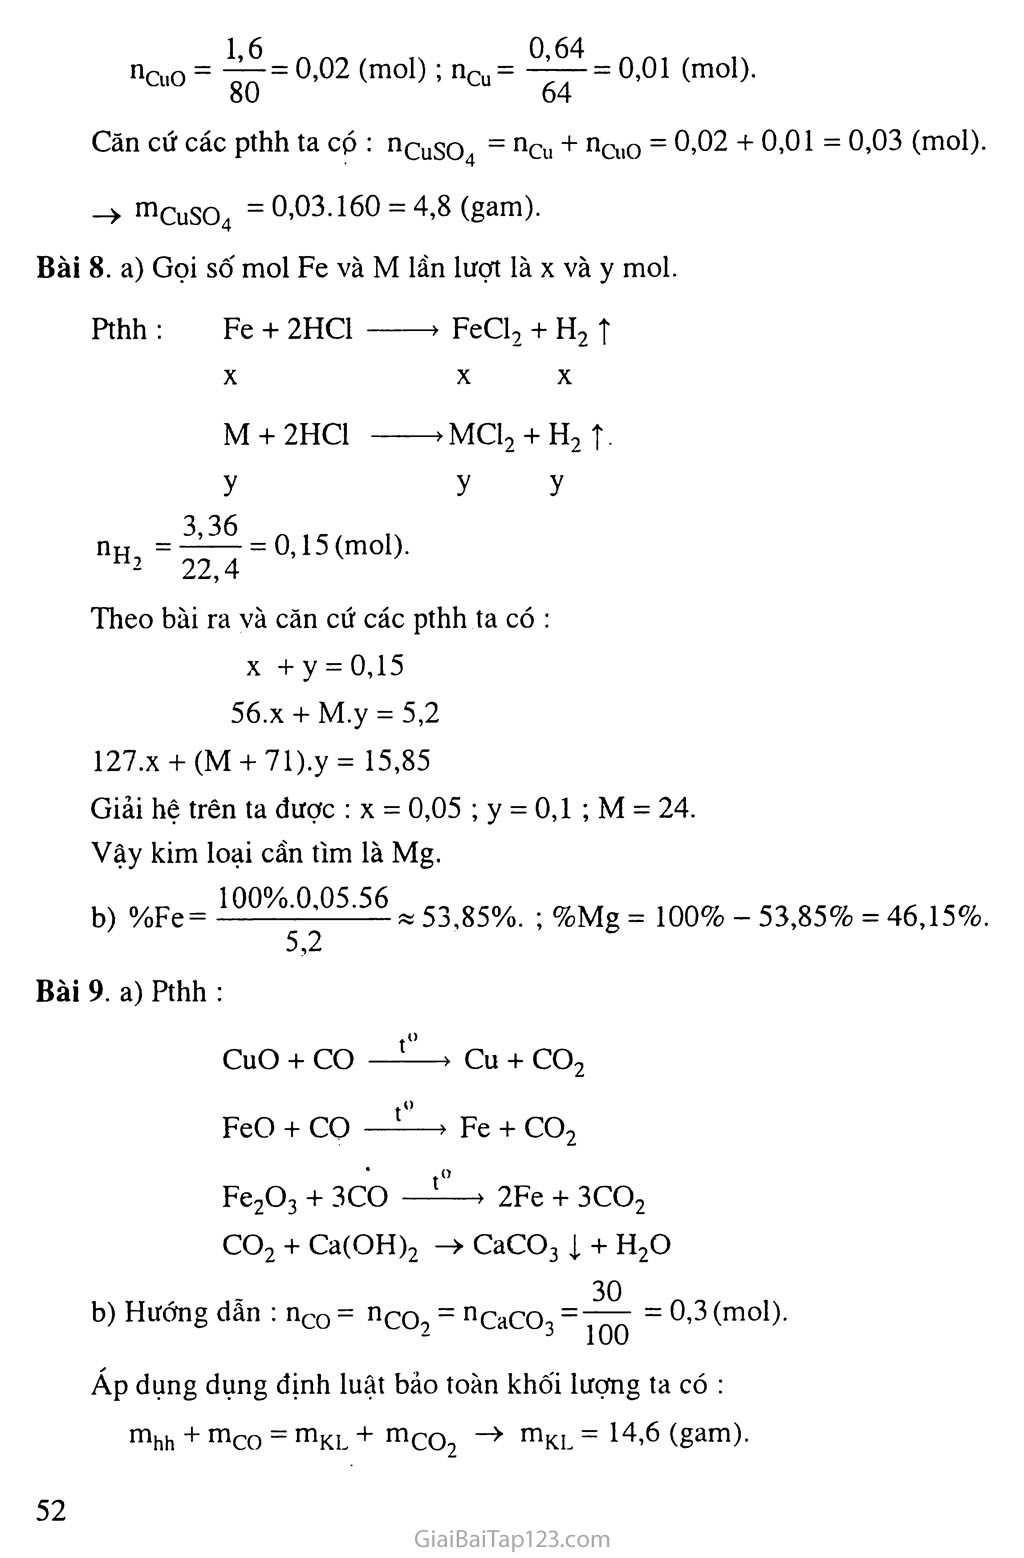 Bài 16: Tính chất hóa học của kim loại trang 6